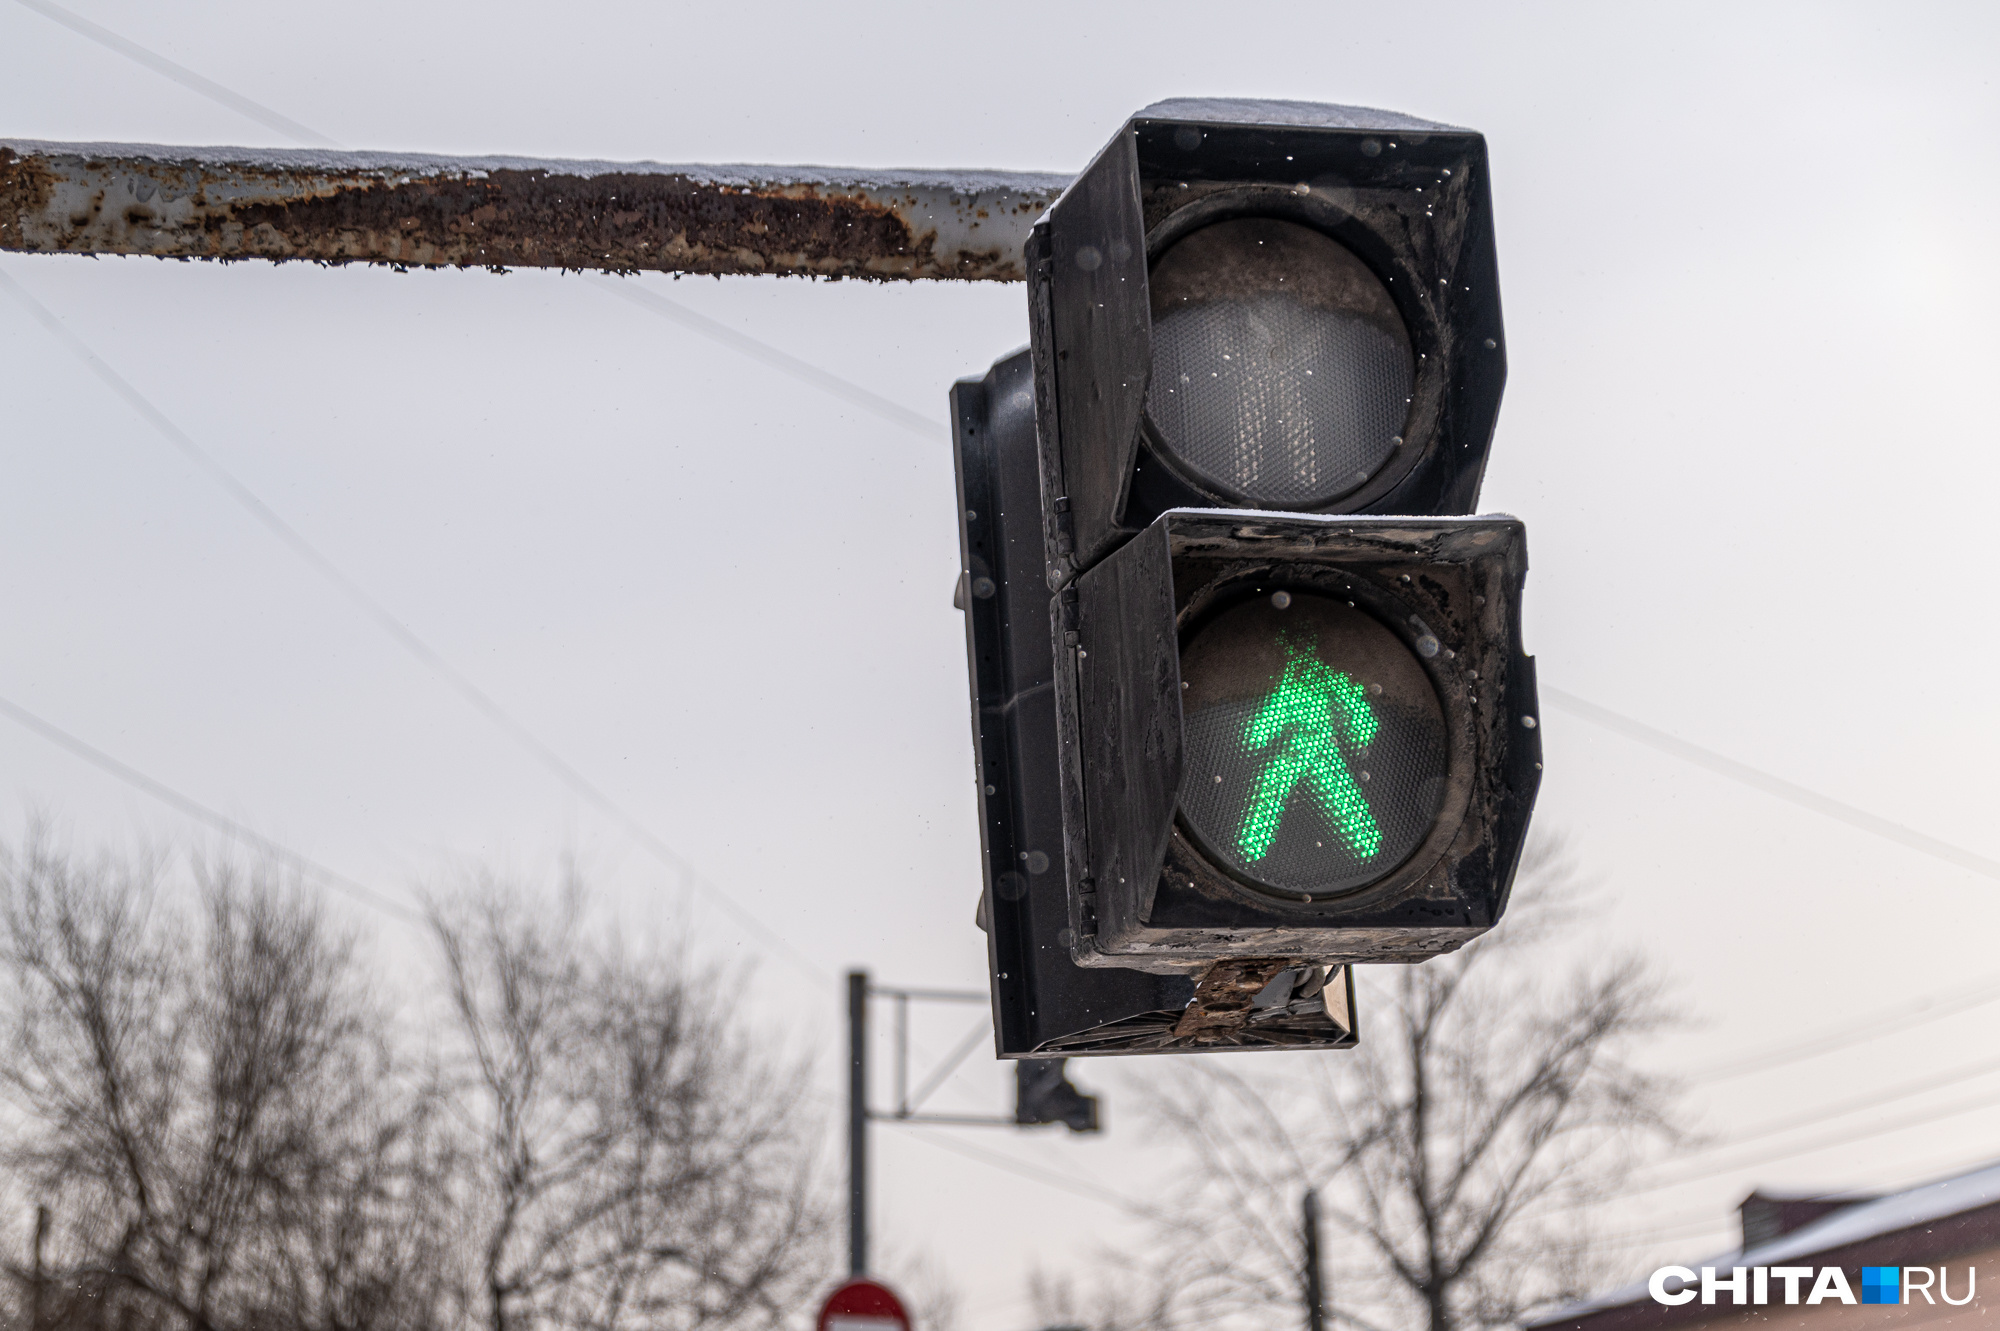 Три светофора на Ленина в Чите обесточило из-за аварии